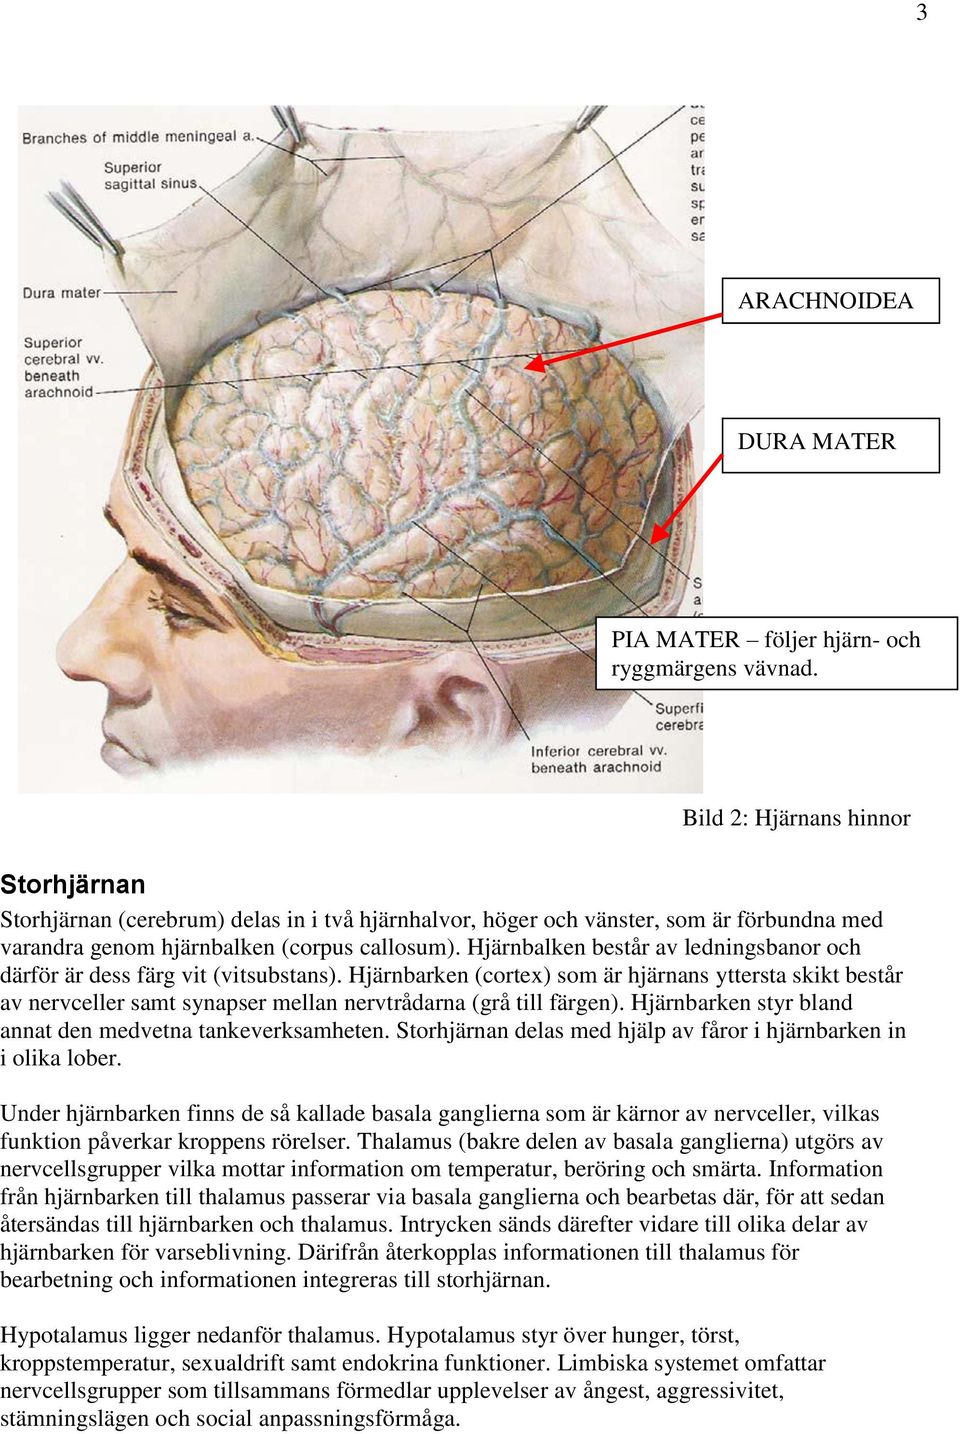 Hjärnbalken består av ledningsbanor och därför är dess färg vit (vitsubstans).